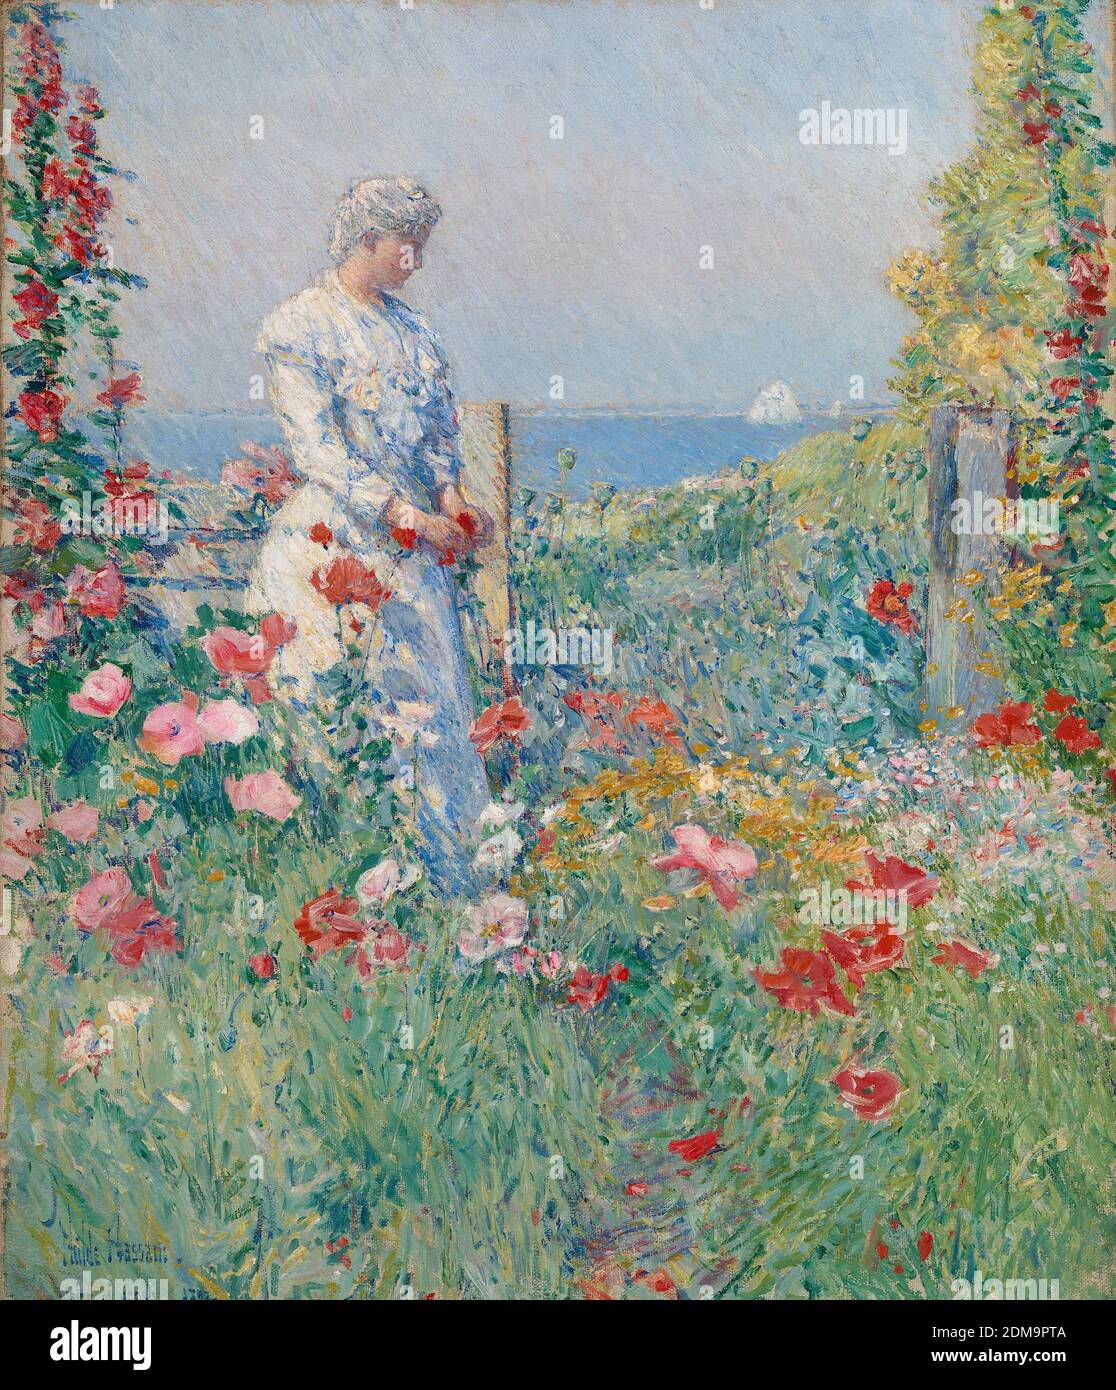 Im Garten (Celia Thaxter in ihrem Garten) 1892 American Impressionist Painting von Childe Hassam - sehr hoch Auflösung und Bildqualität Stockfoto